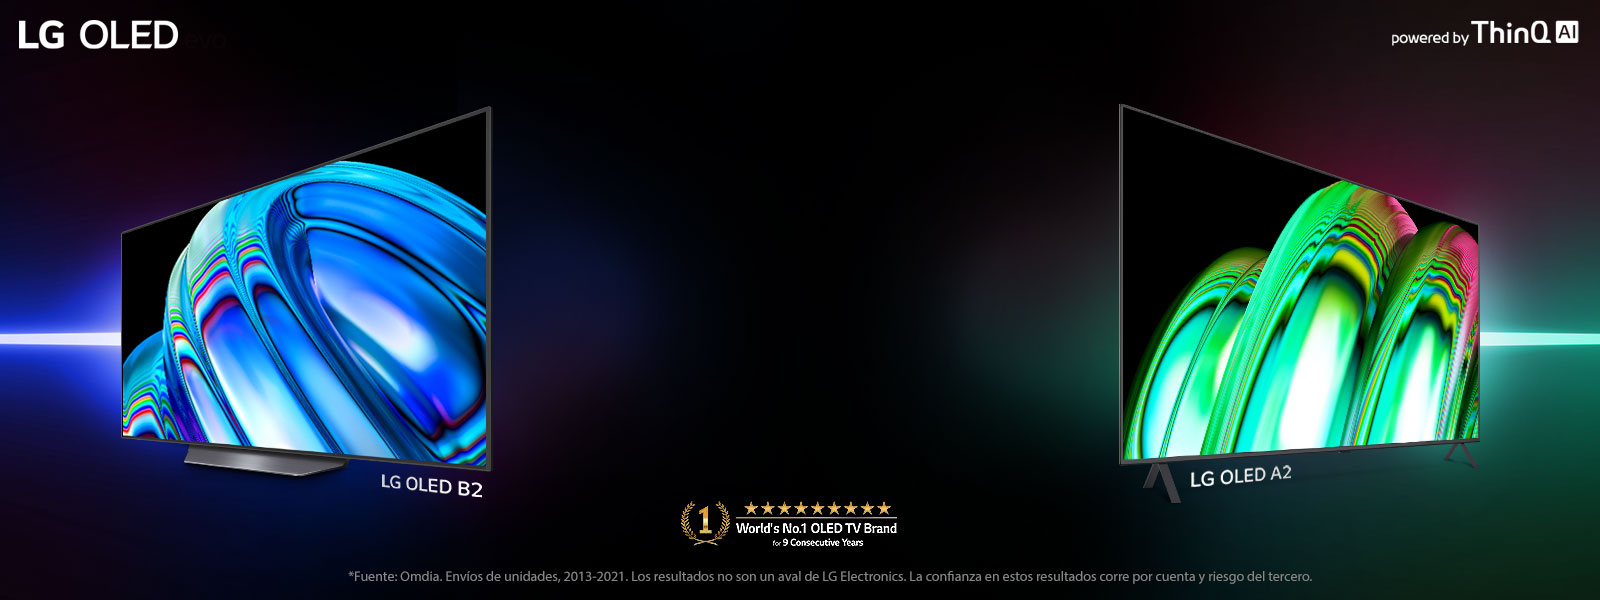 LG OLED B2 y LG OLED A2 se destacan sobre un fondo negro. LG OLED B2 se inclina hacia la izquierda y muestra una imagen abstracta de color azul. LG OLED B2 se inclina hacia la derecha y muestra una imagen abstracta de color verde.